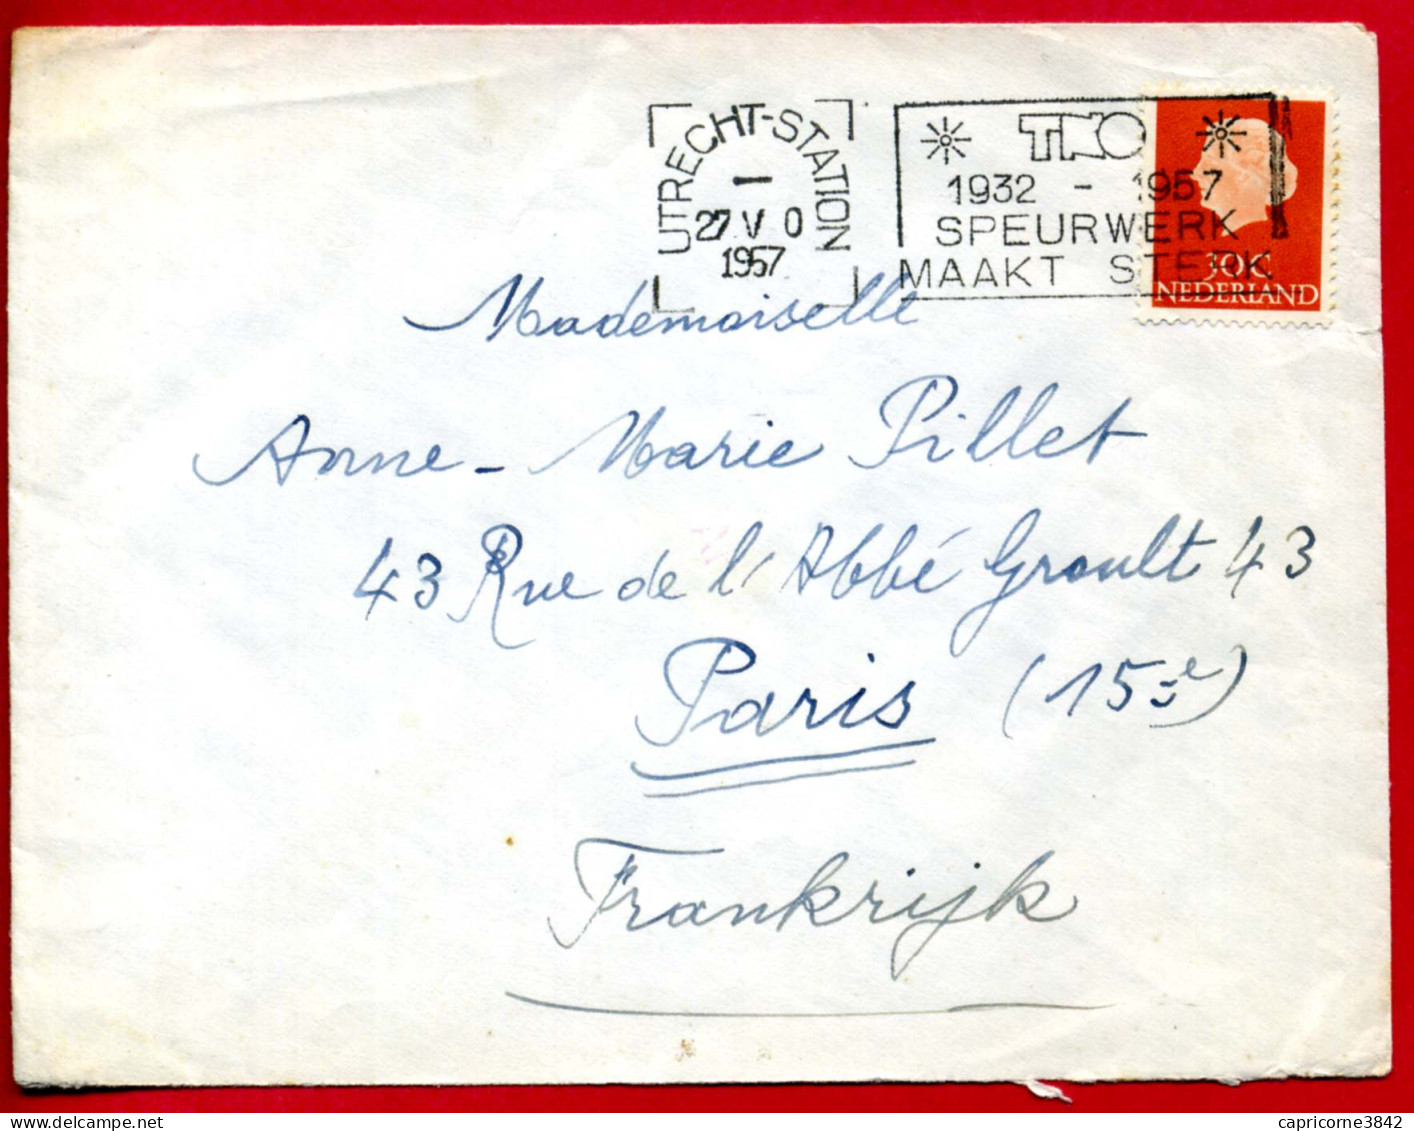 1957 - Pays Bas - Cachet ULTRECHT-STATION - "TNO - 1932-1957 - SPEURWERK MAAKT STERK" - Poststempel